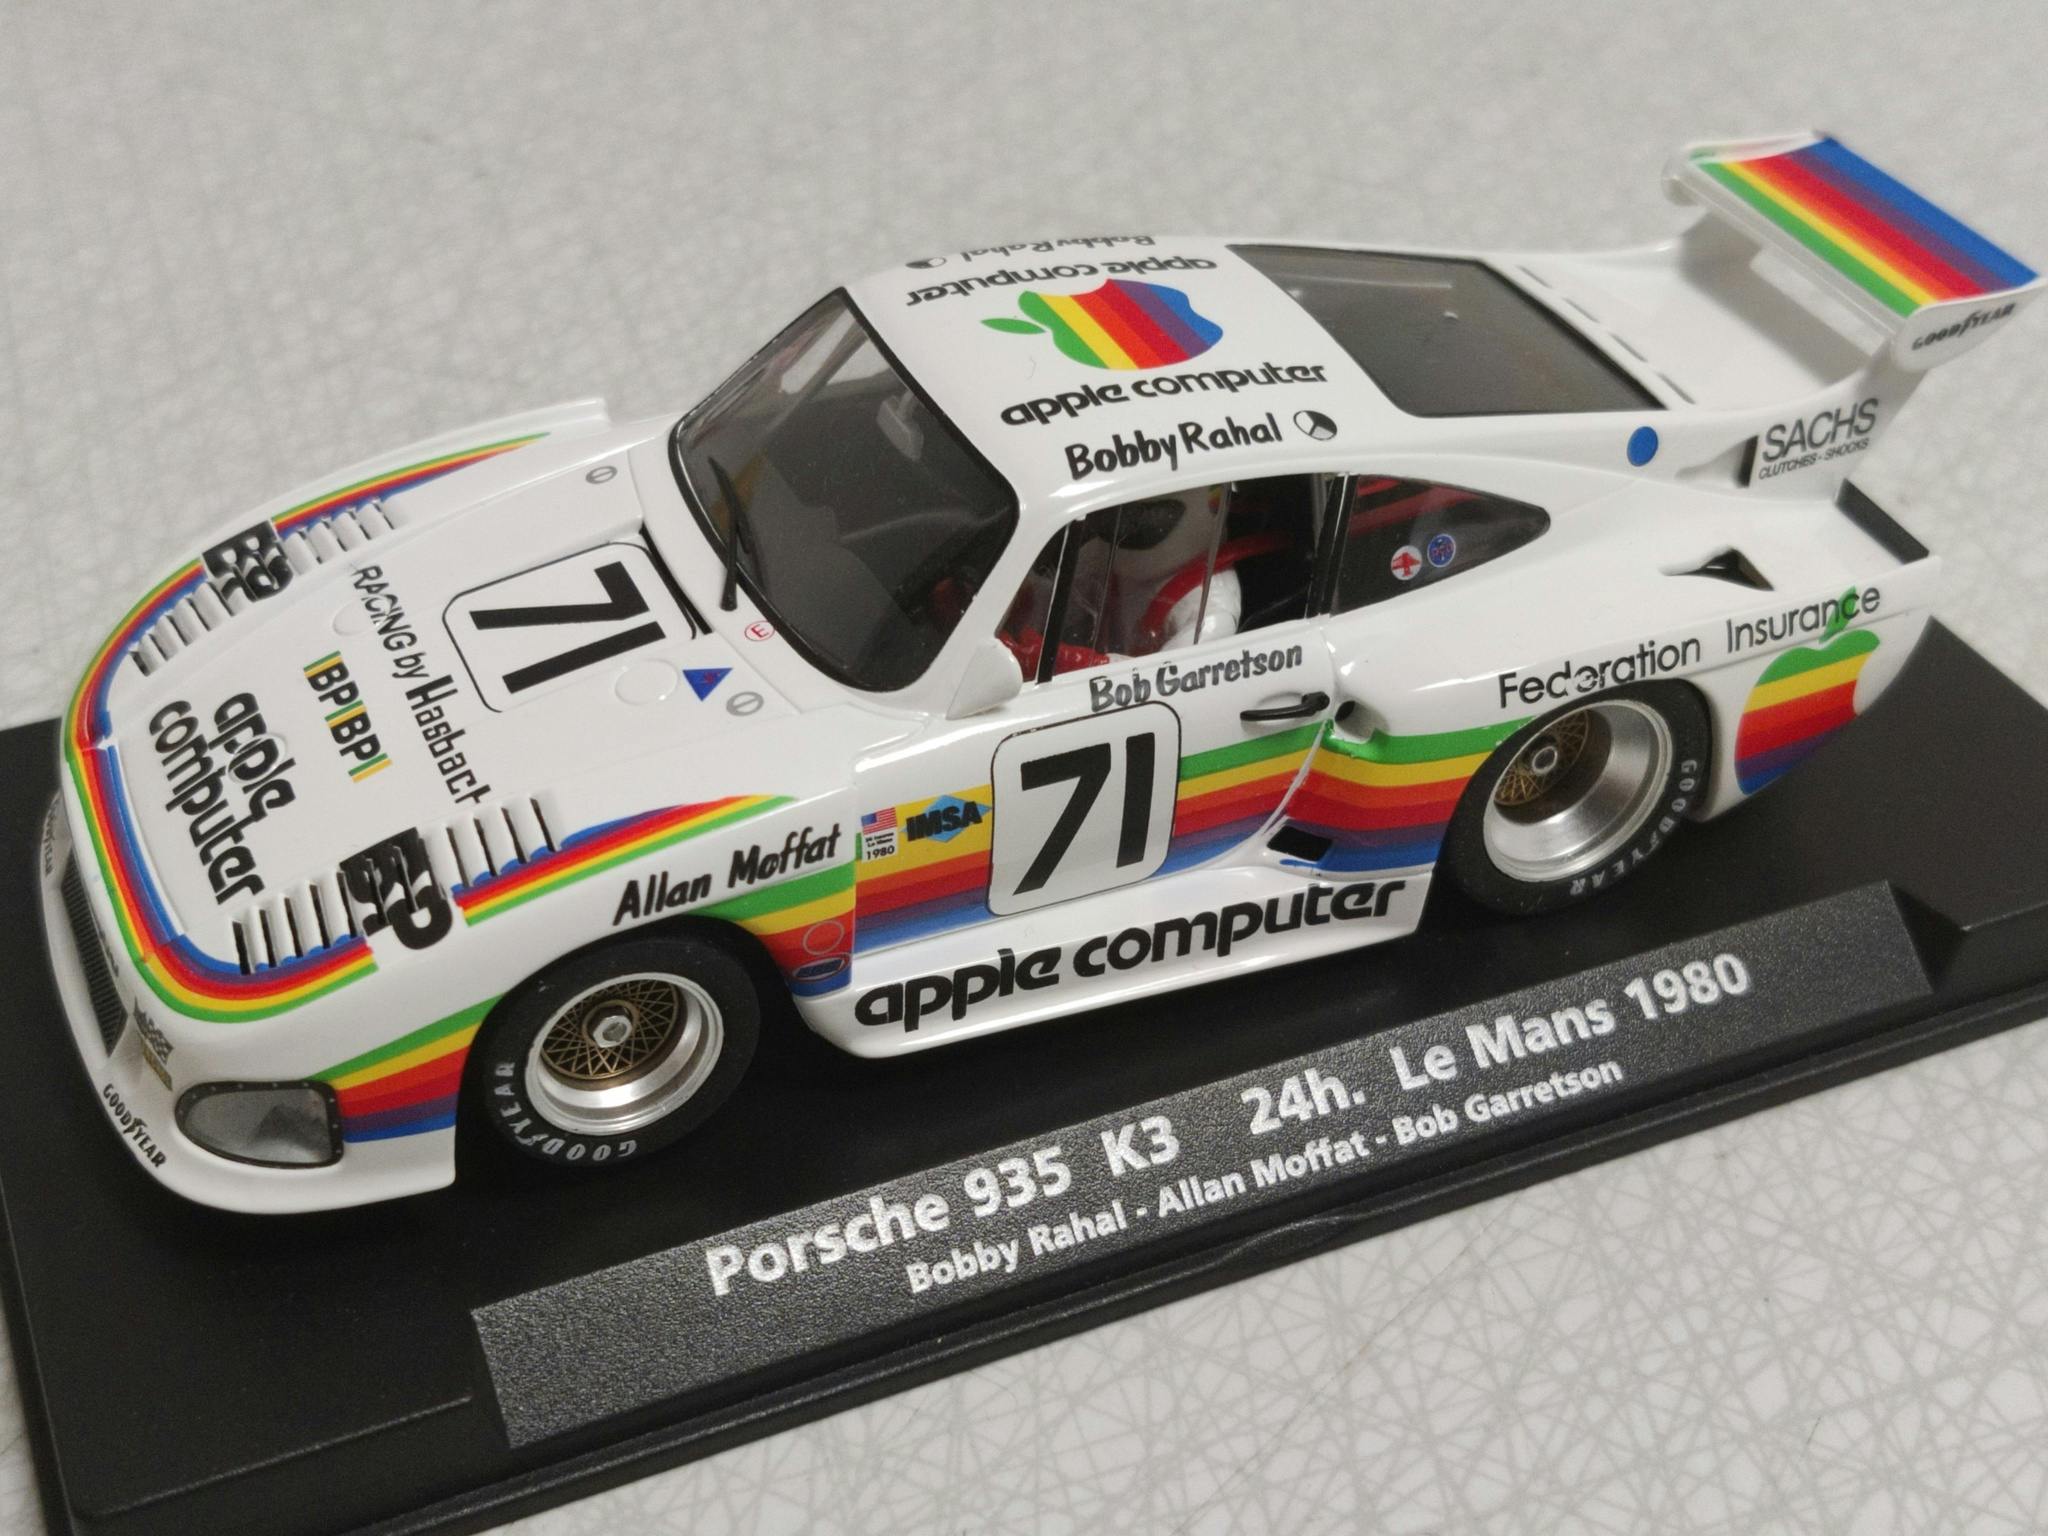 FLY Car Model - Porsche 935 K3 - LeMans 1980 - Bobby Rahal (900 SEK) I LAGER / IN STOCK